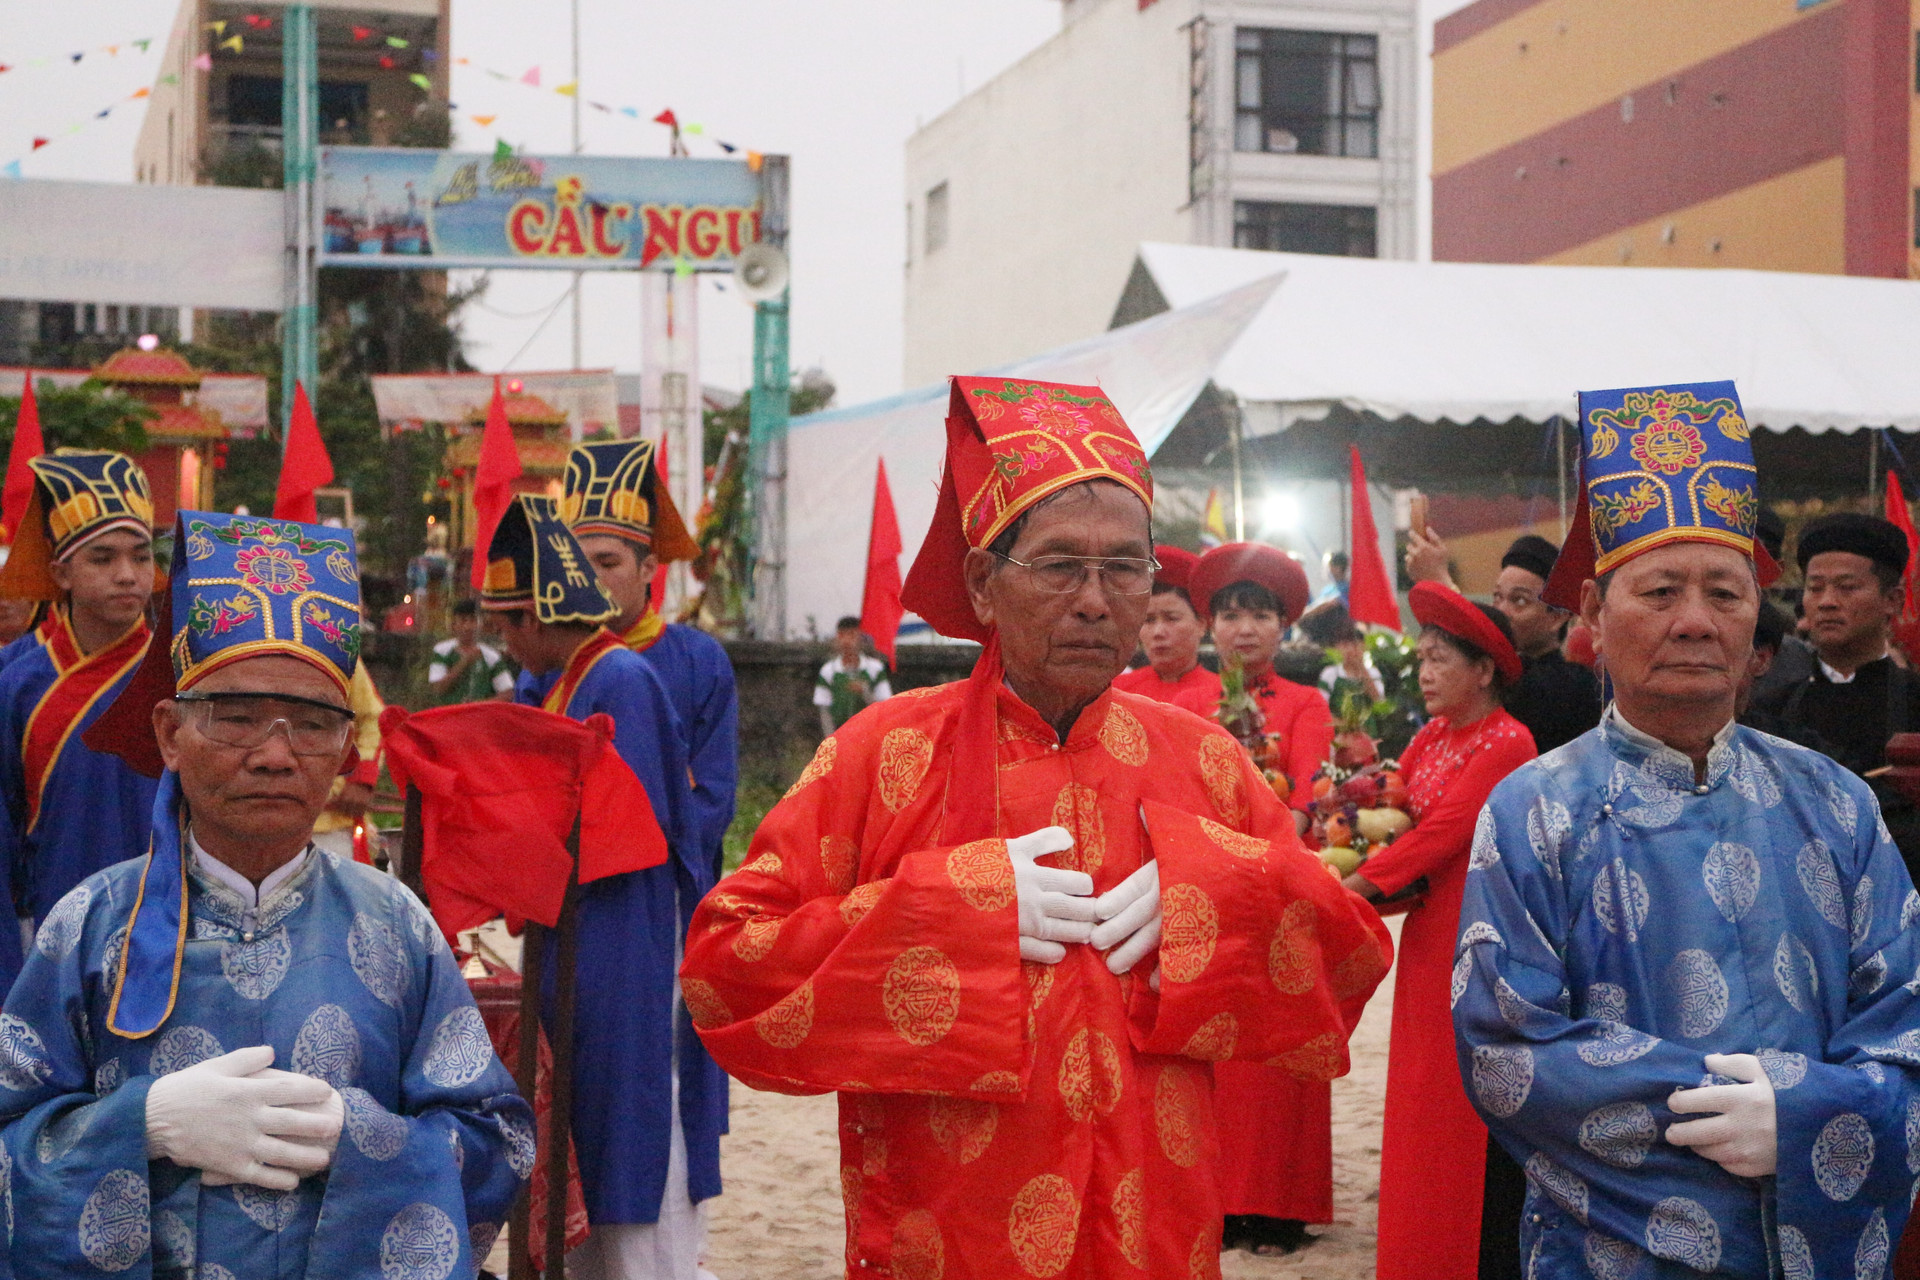 Lễ hội Cầu ngư ở Đà Nẵng được công nhận là Di sản Văn hóa phi vật thể quốc gia